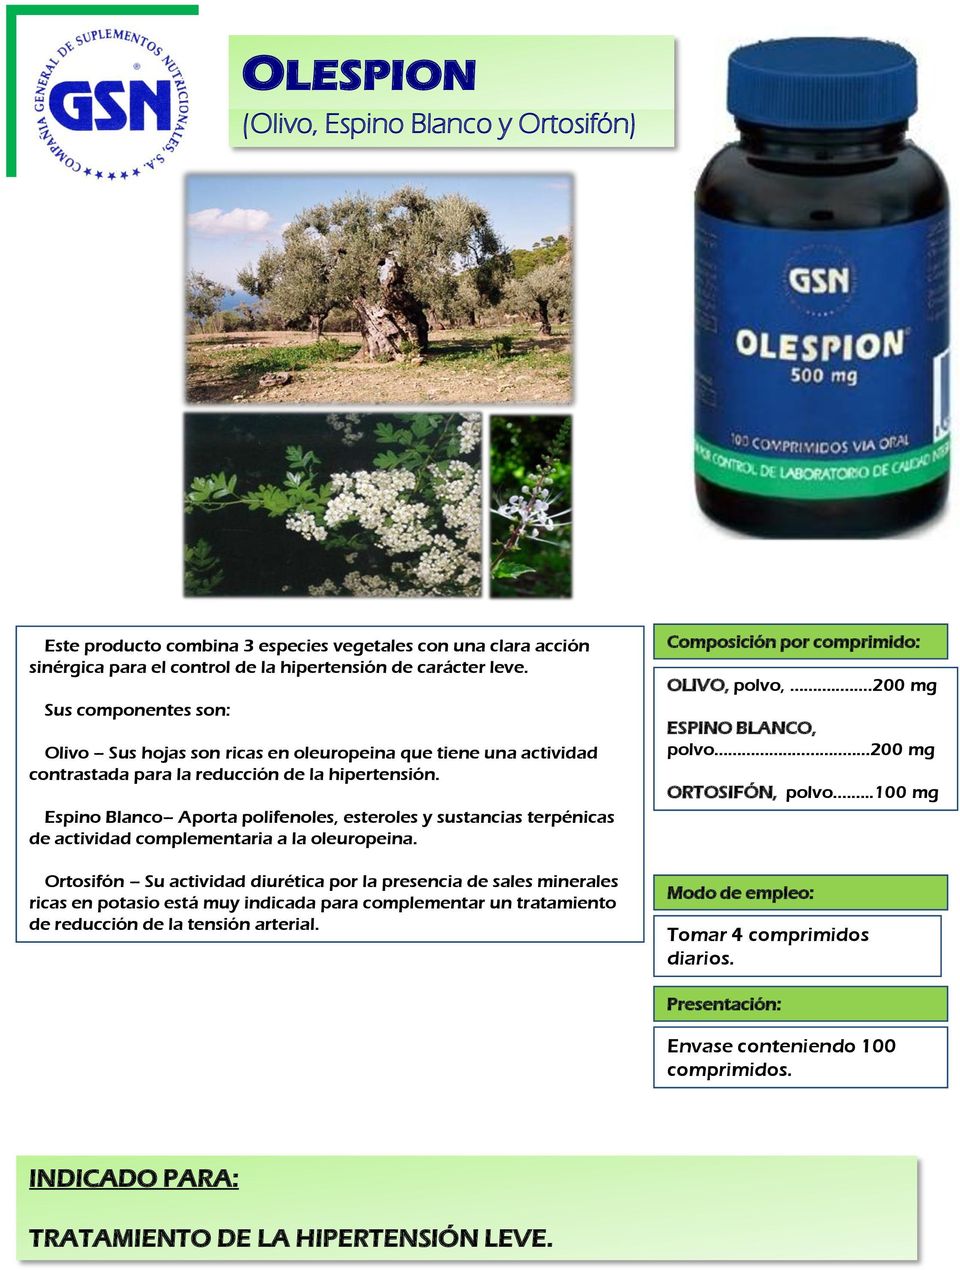 Espino Blanco Aporta polifenoles, esteroles y sustancias terpénicas de actividad complementaria a la oleuropeina.